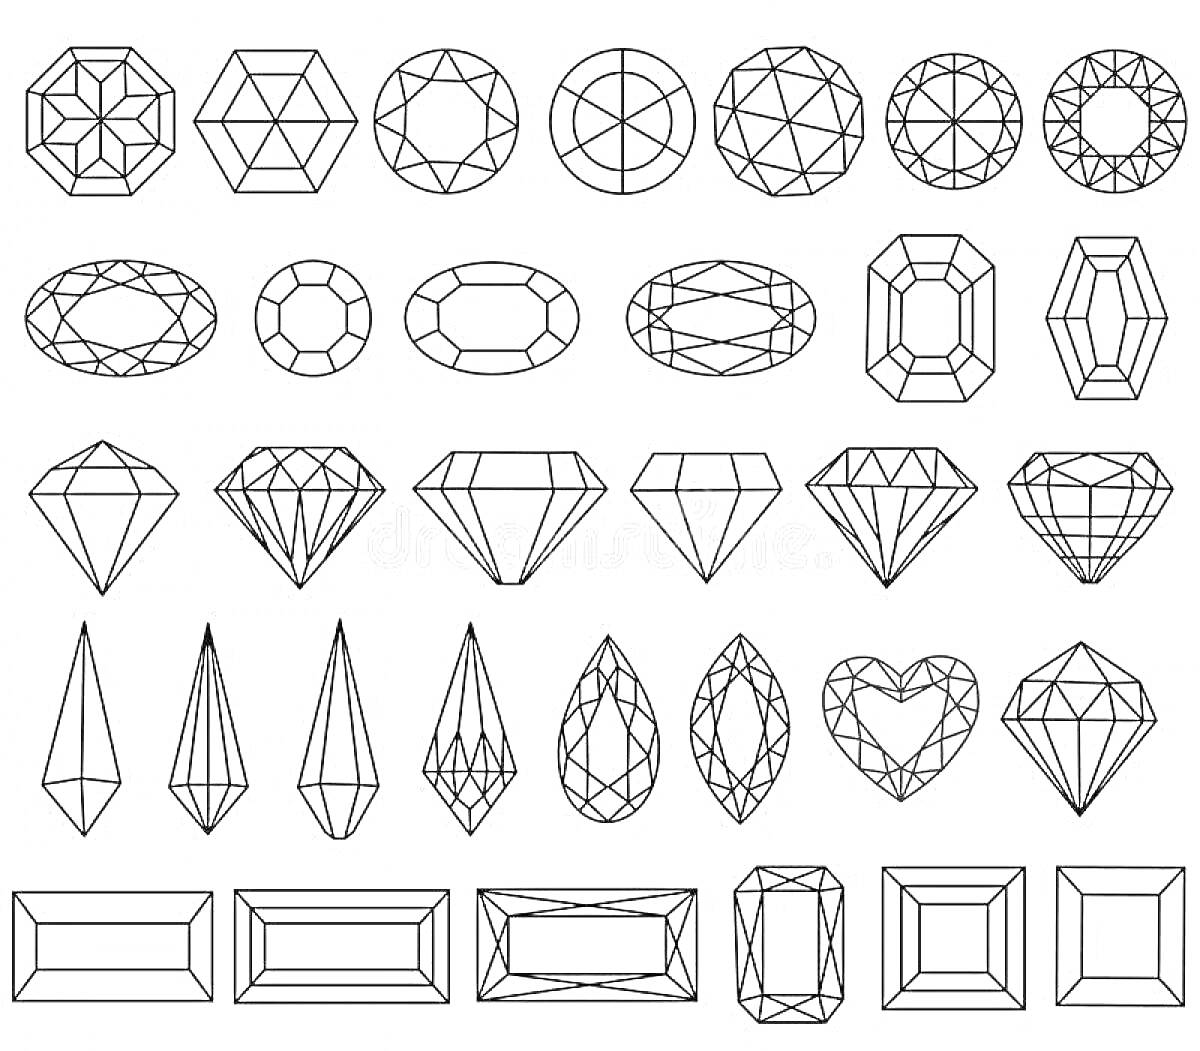 Раскраска разнообразные драгоценные камни, включающие различные формы и огранки, такие как округлые, овальные, прямоугольные, сердцевидные и многоугольные